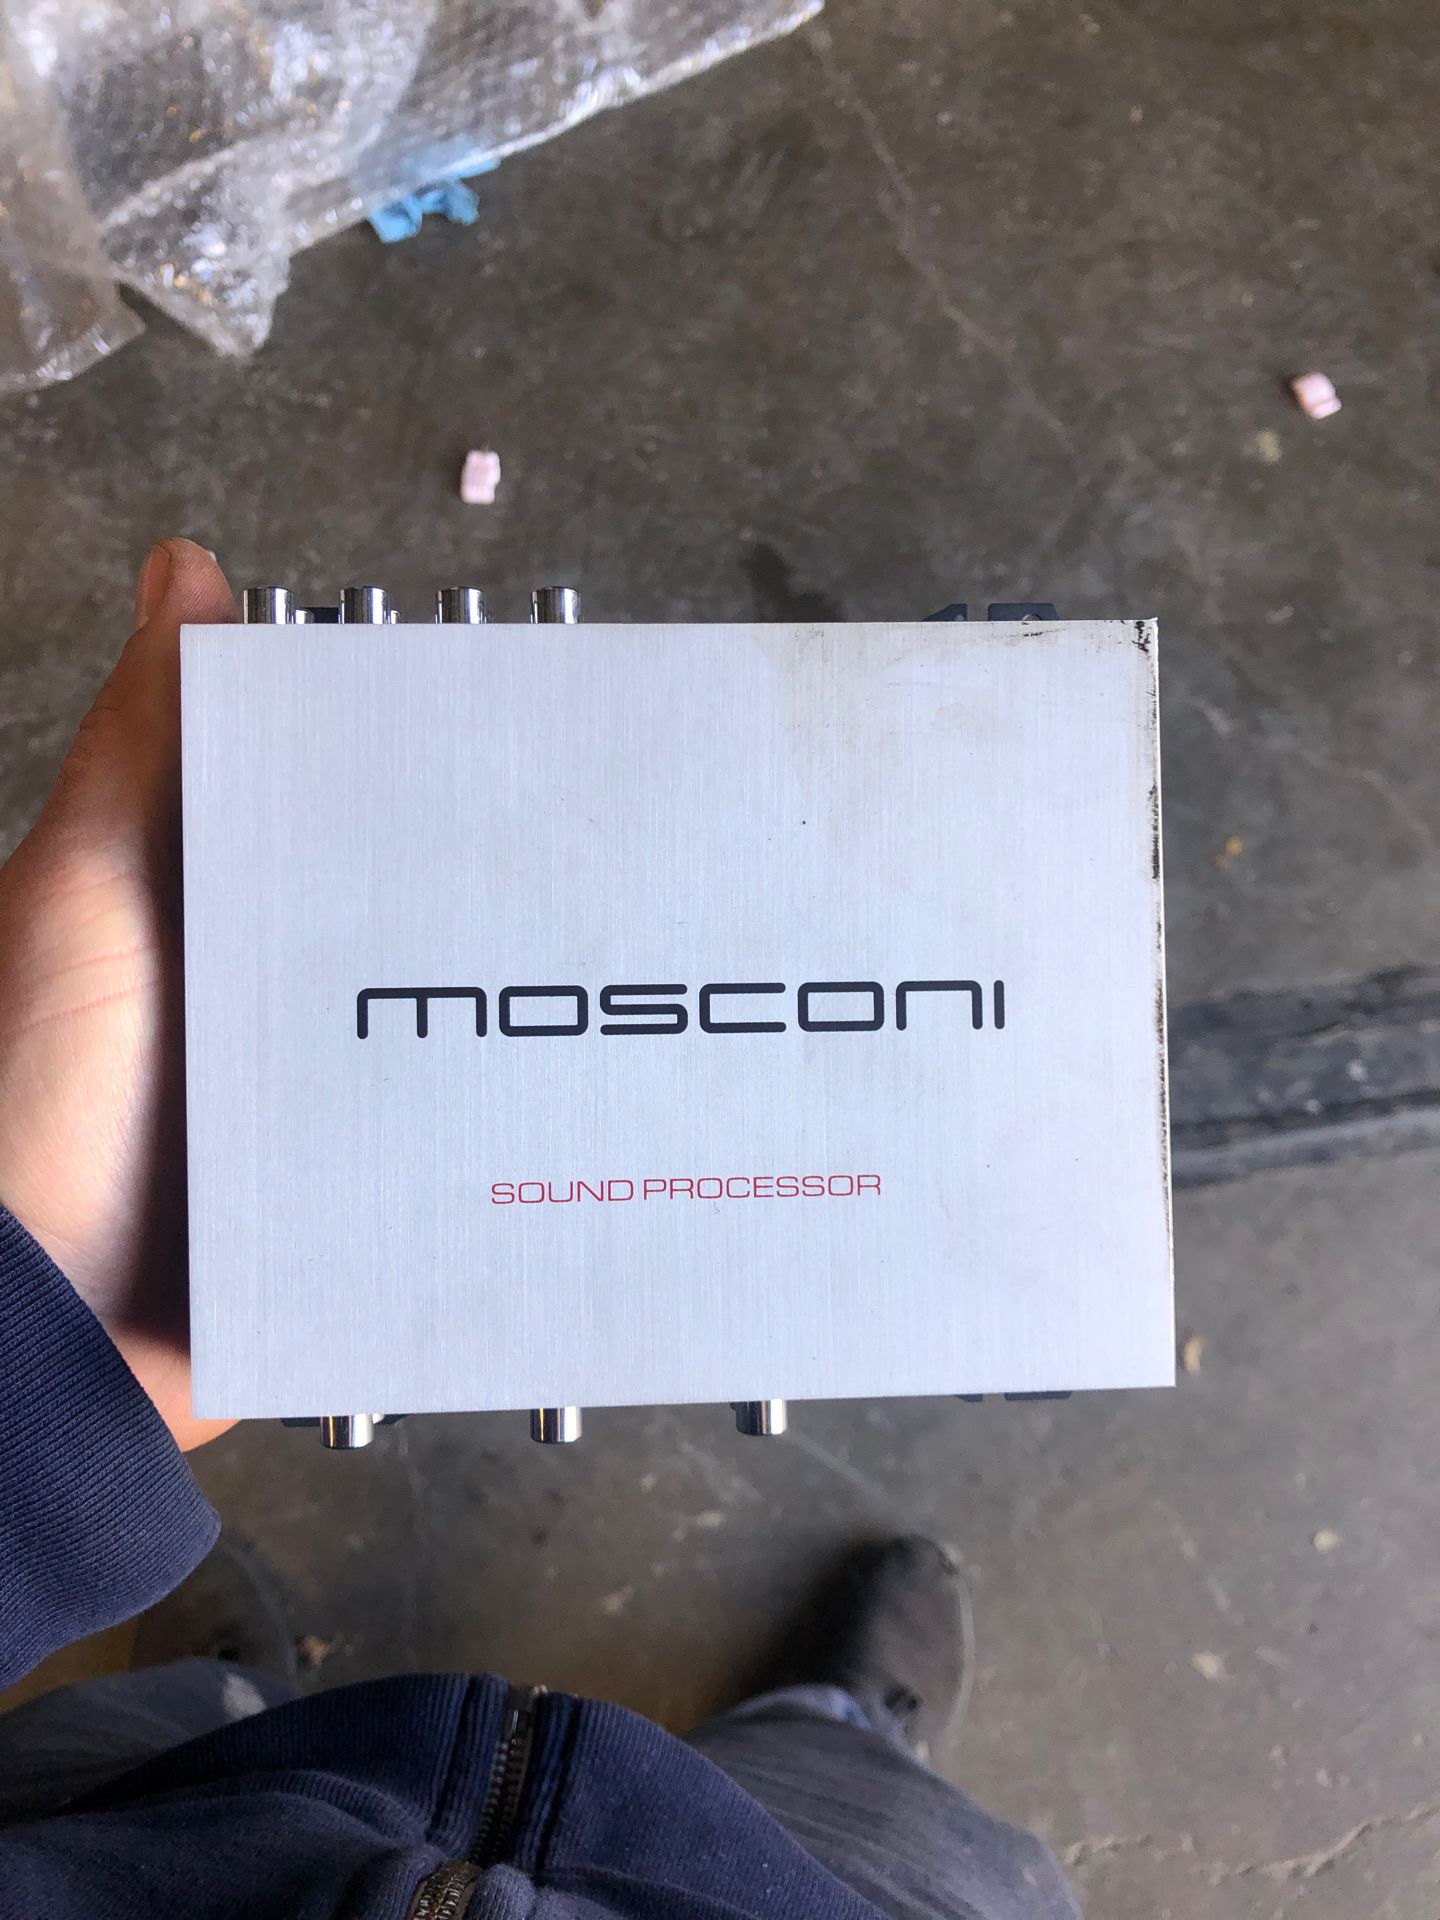 Mosconi sound precessor audio amp amplifier